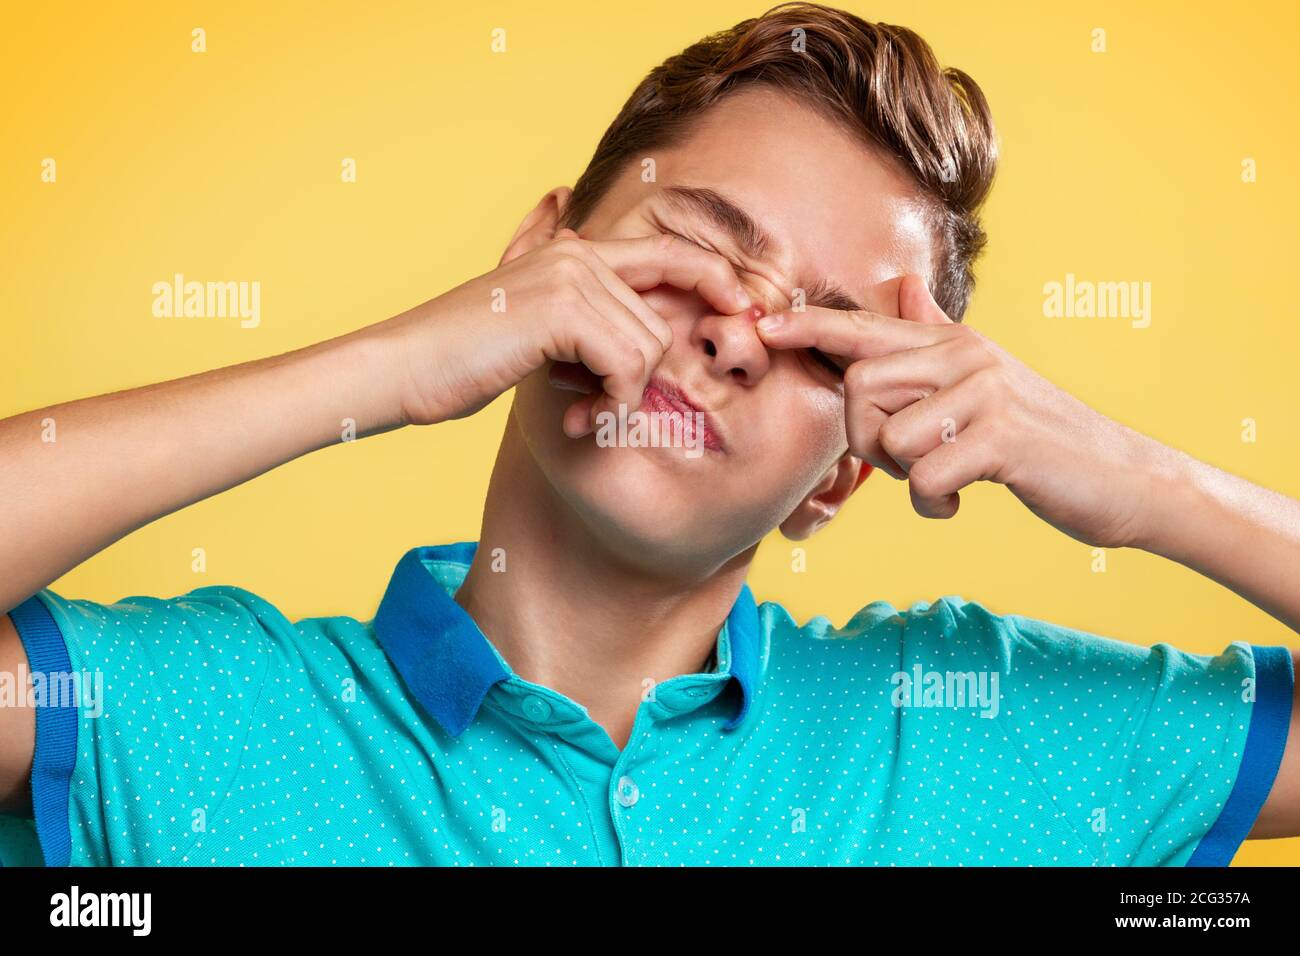 Cosmétologie, dermatologie et acné. Un adolescent dans un t-shirt bleu tire un bouton sur son nez avec ses doigts, les yeux fermés dans la douleur. Rétrogro jaune Banque D'Images